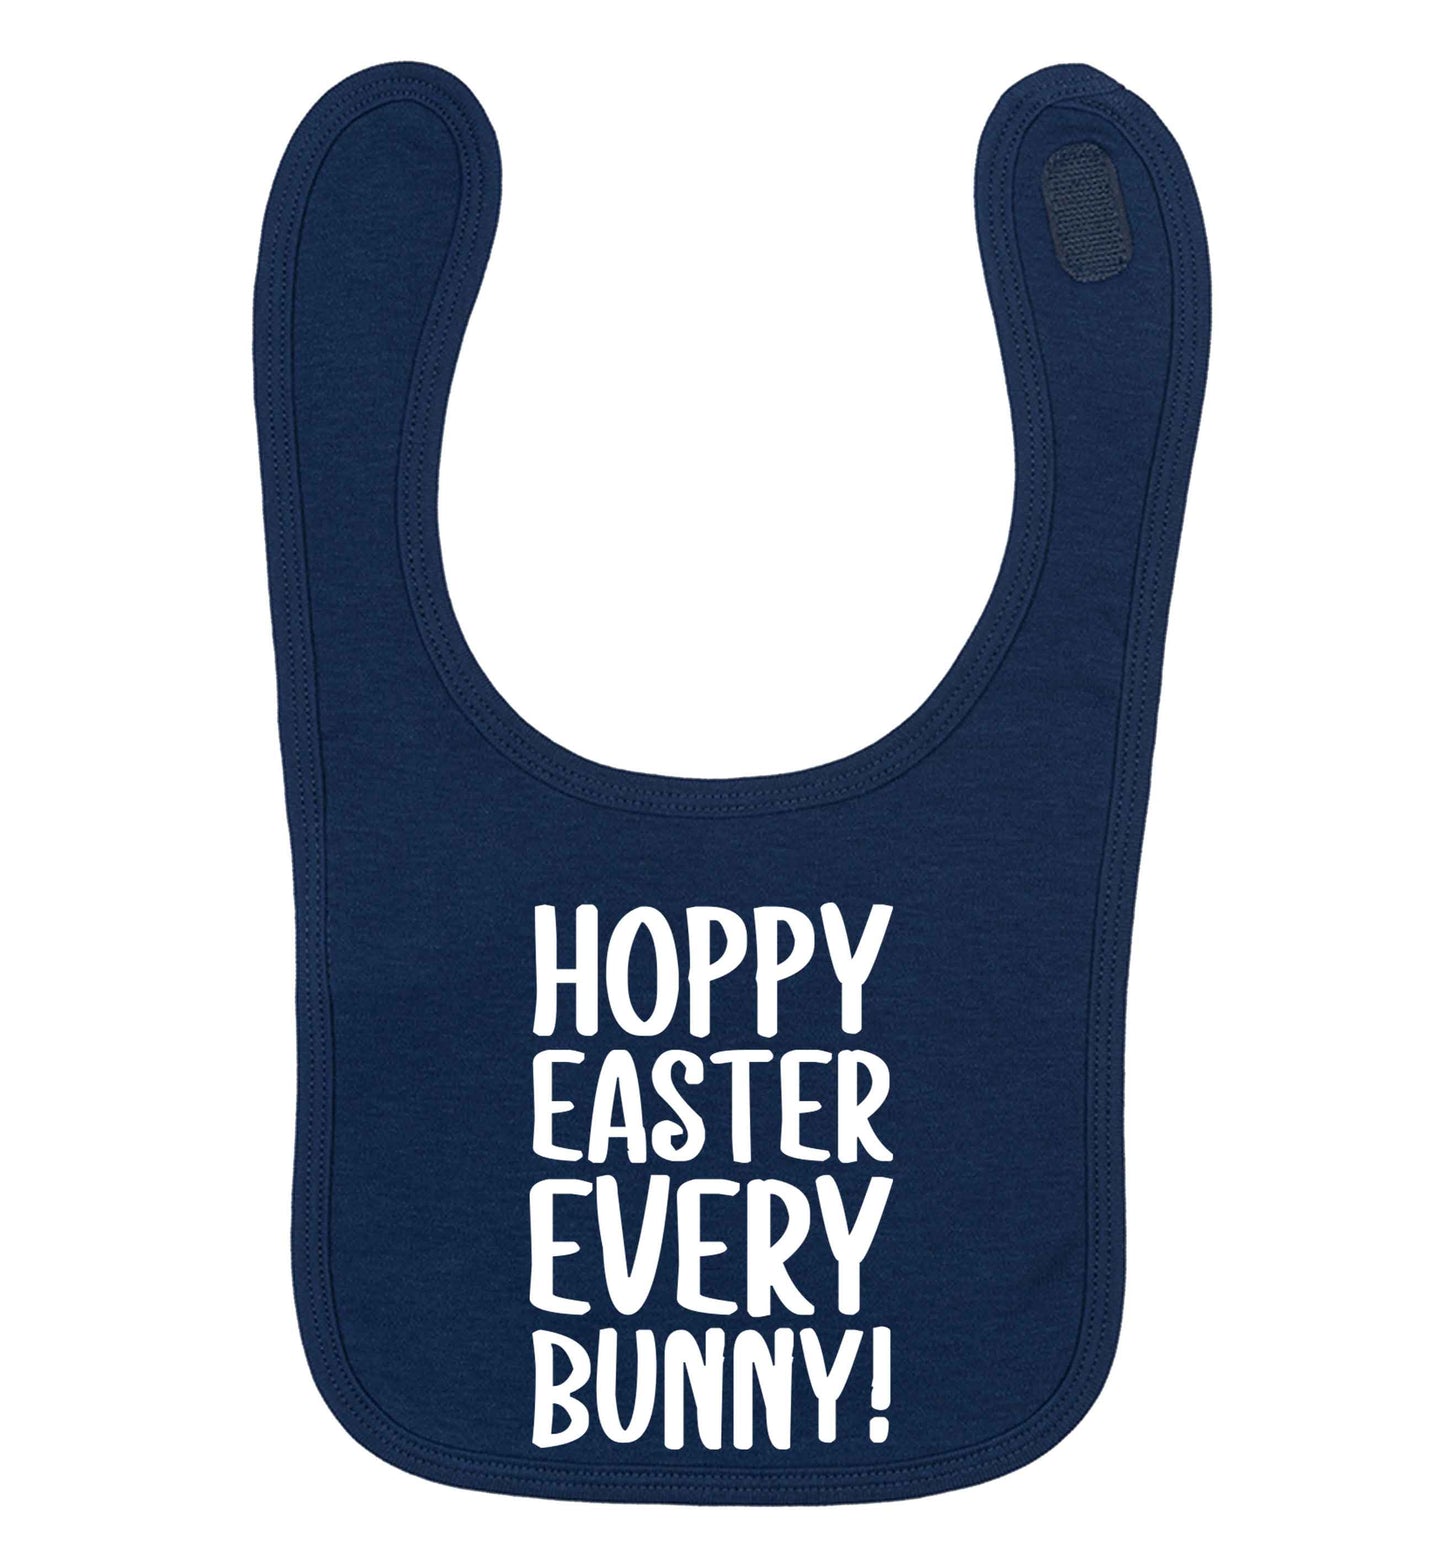 Hoppy Easter every bunny! navy baby bib